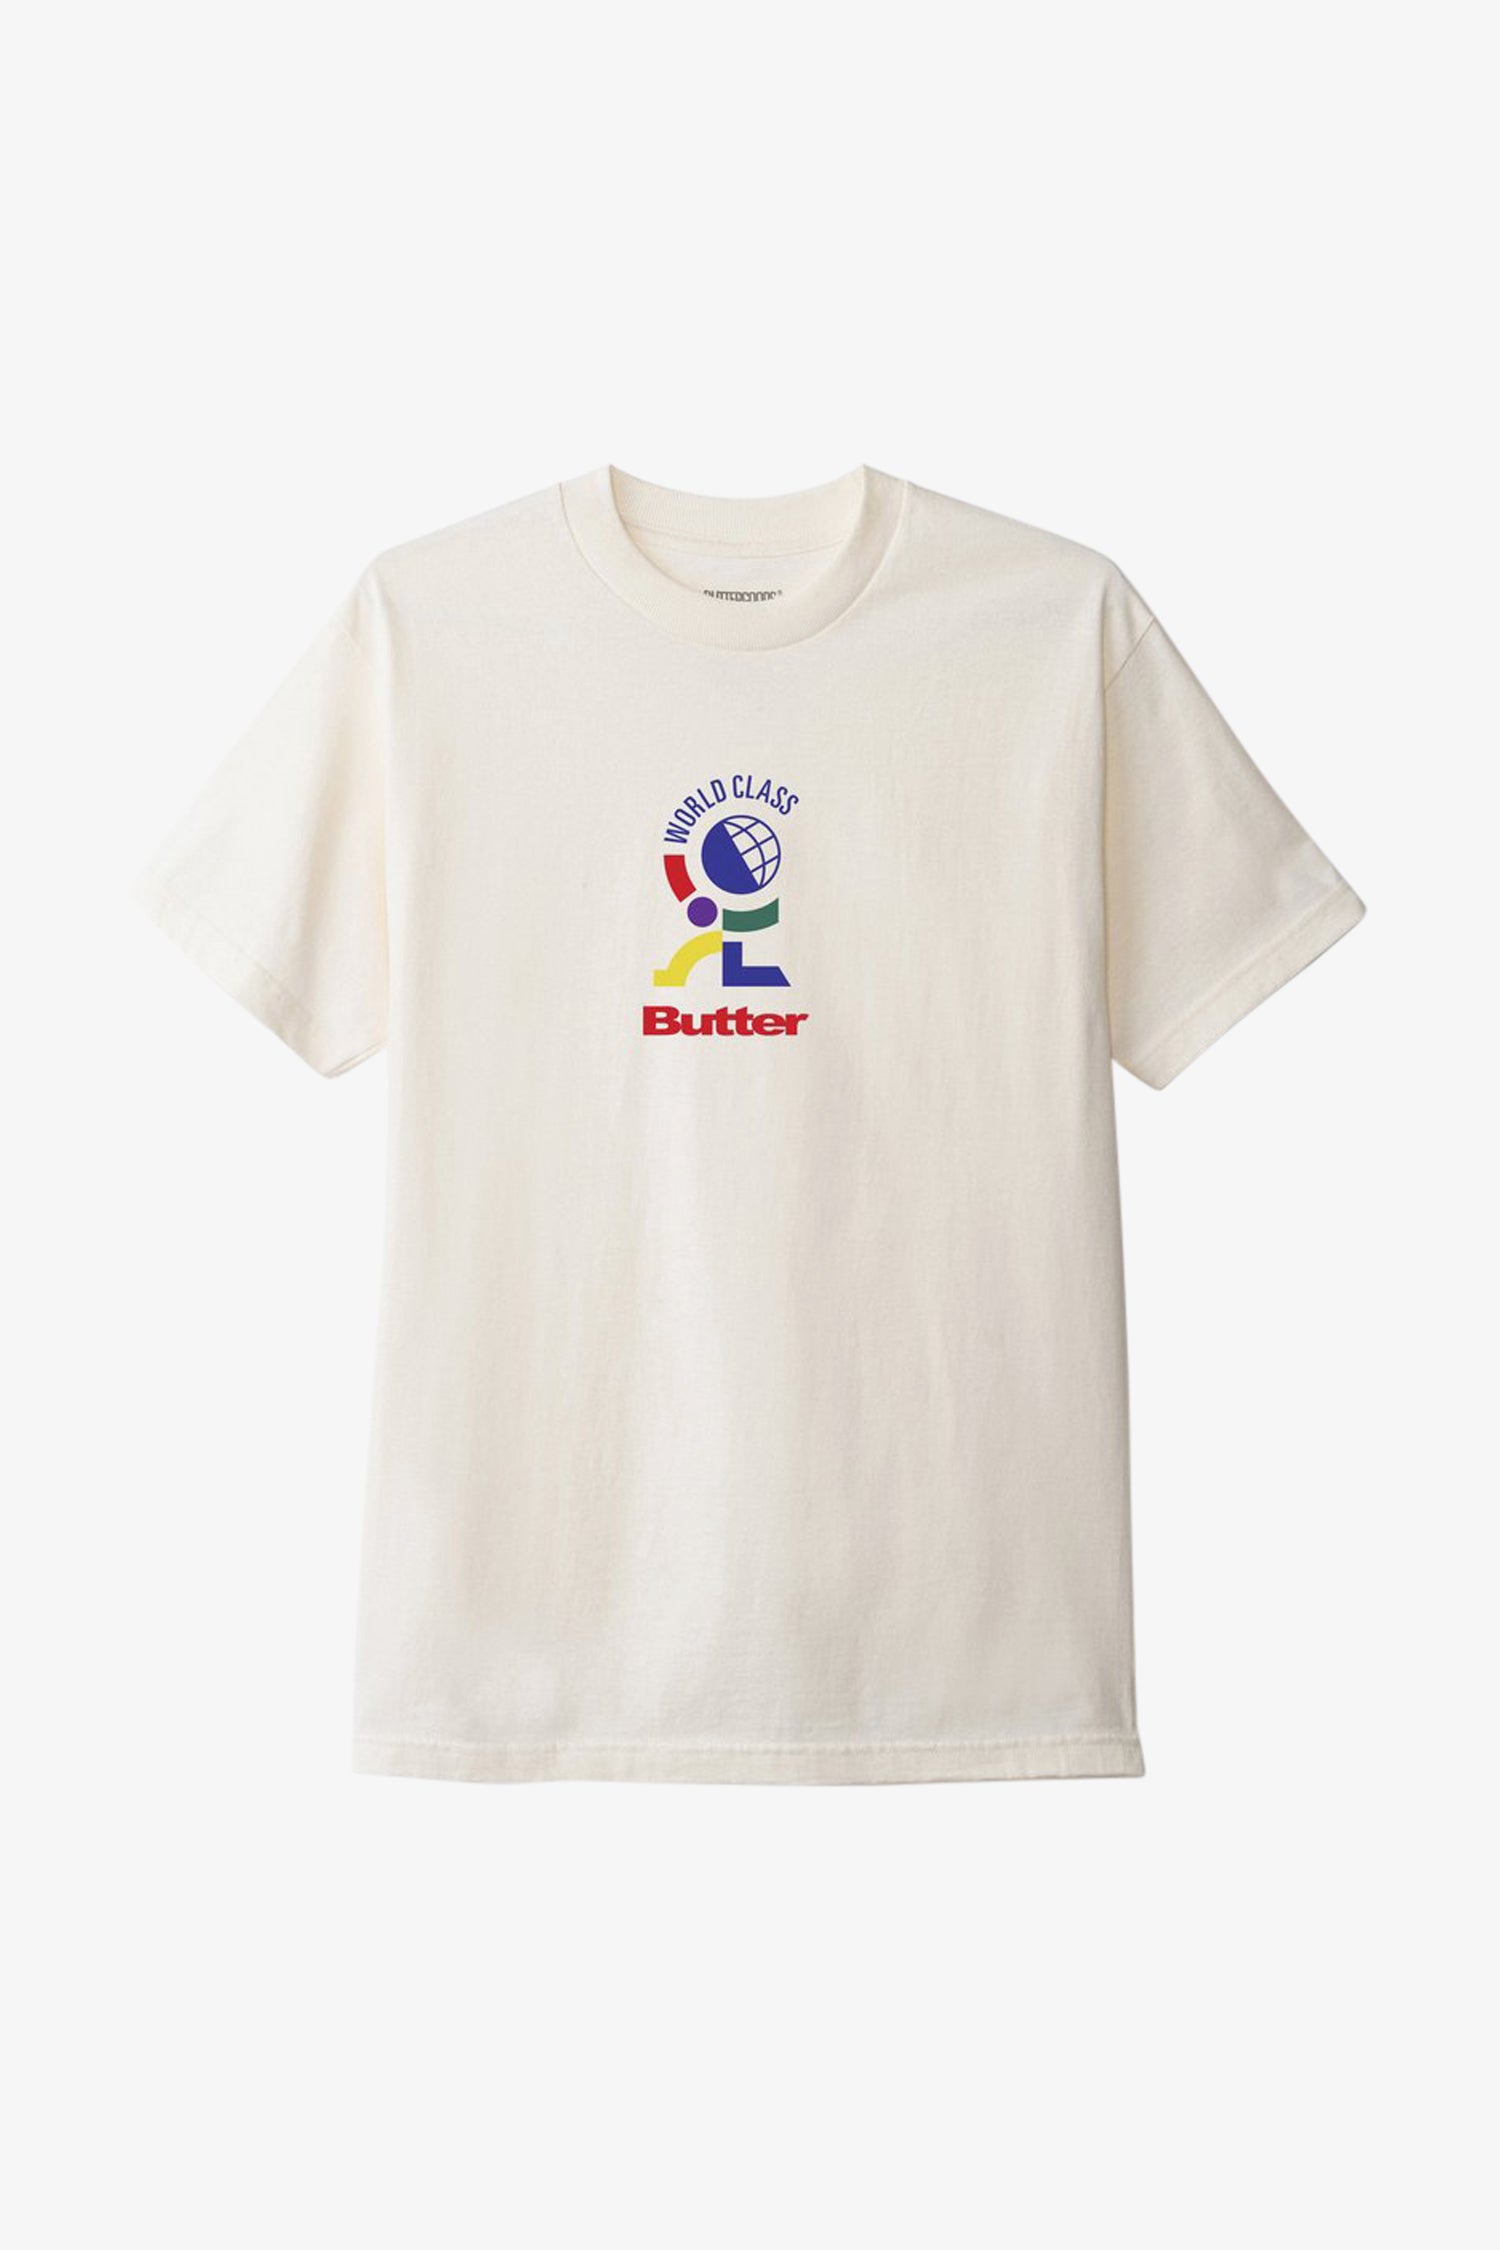 Selectshop FRAME - BUTTER GOODS World Class T-Shirt T-Shirt Dubai